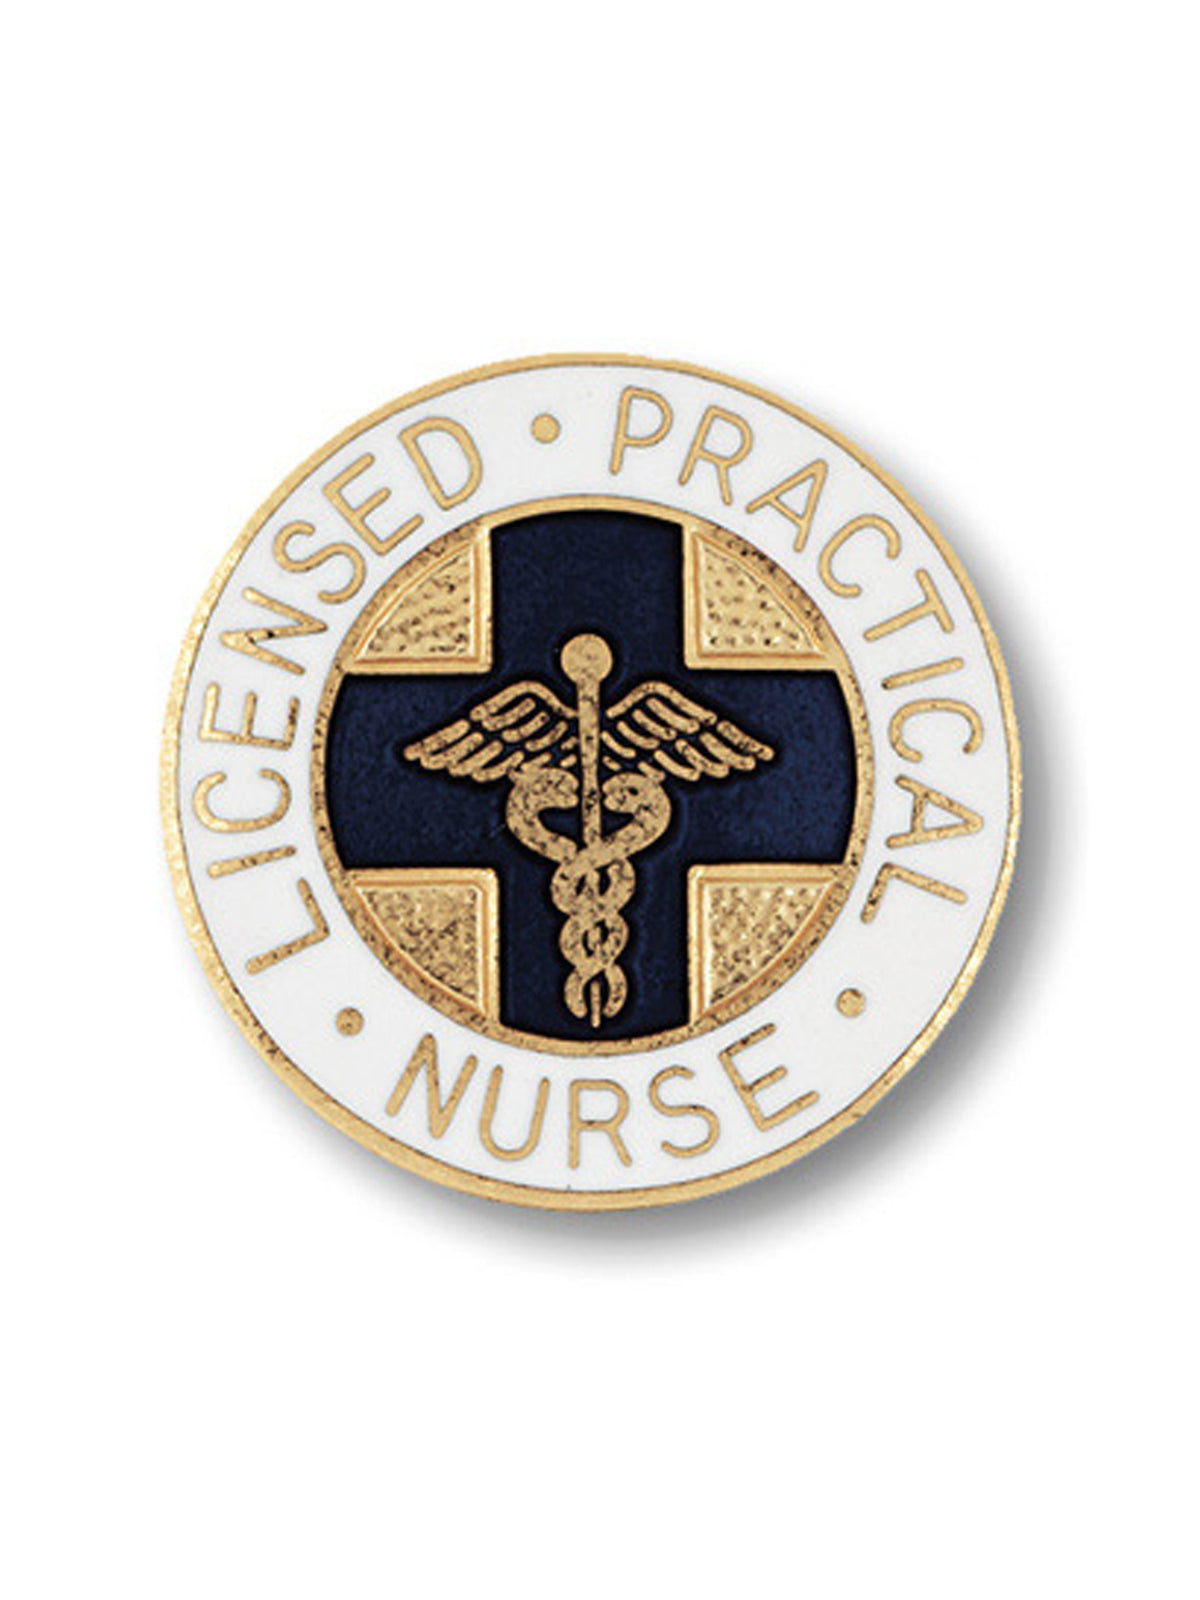 Licensed Practical Nurse Cloisonne Pin - 1033 - Standard